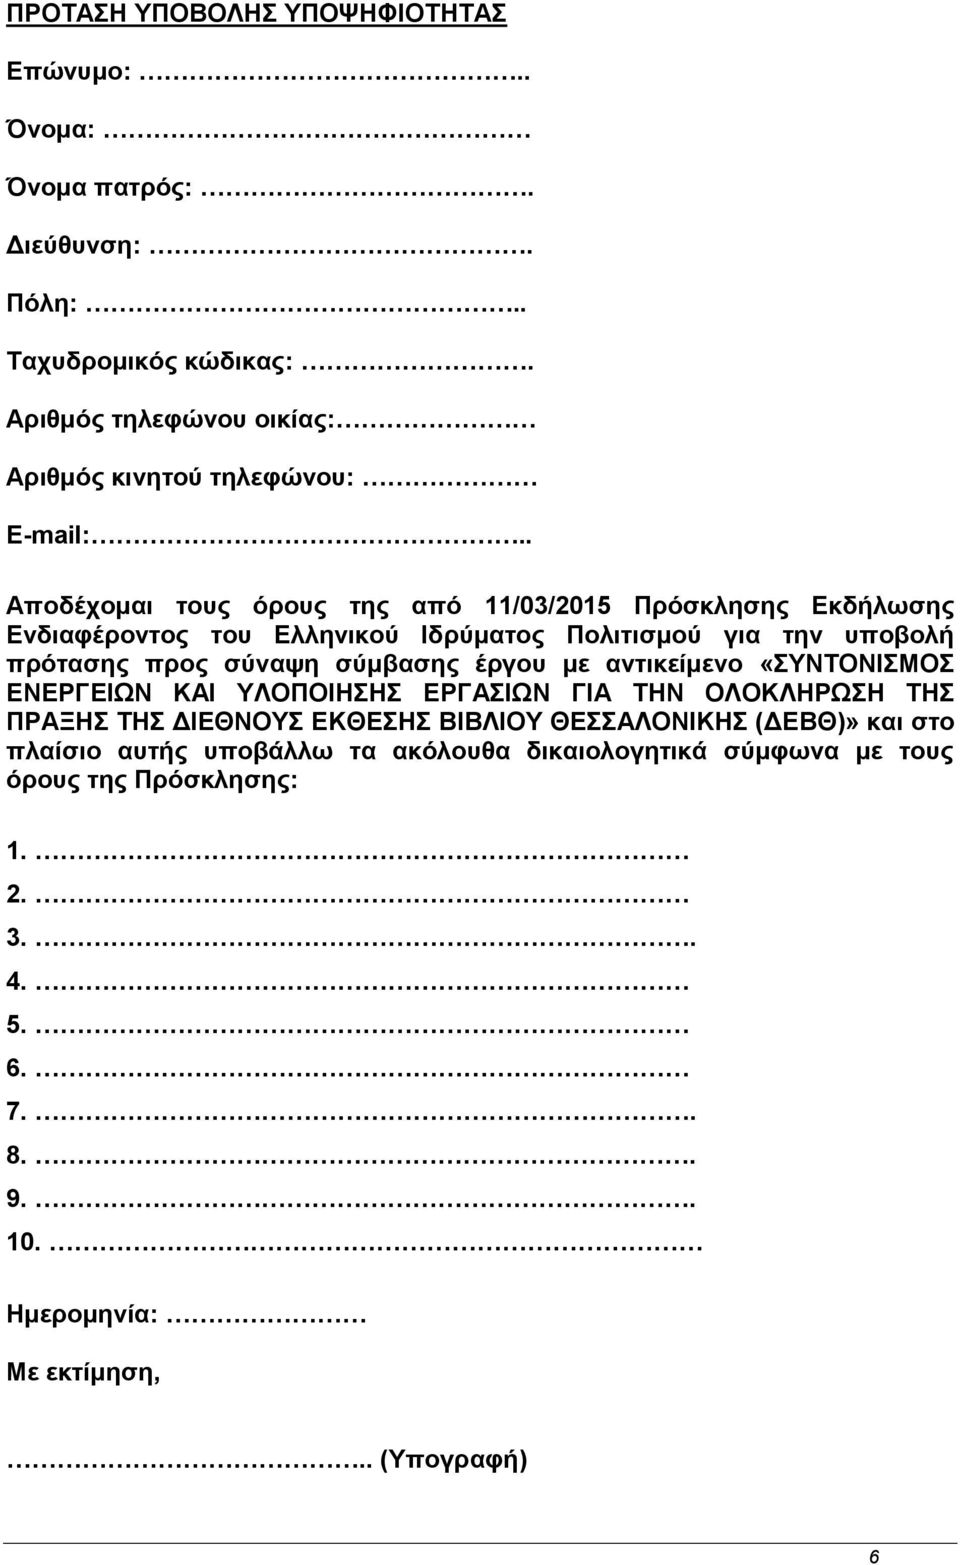 . Αποδέχομαι τους όρους της από 11/03/2015 Πρόσκλησης Εκδήλωσης Ενδιαφέροντος του Ελληνικού Ιδρύματος Πολιτισμού για την υποβολή πρότασης προς σύναψη σύμβασης